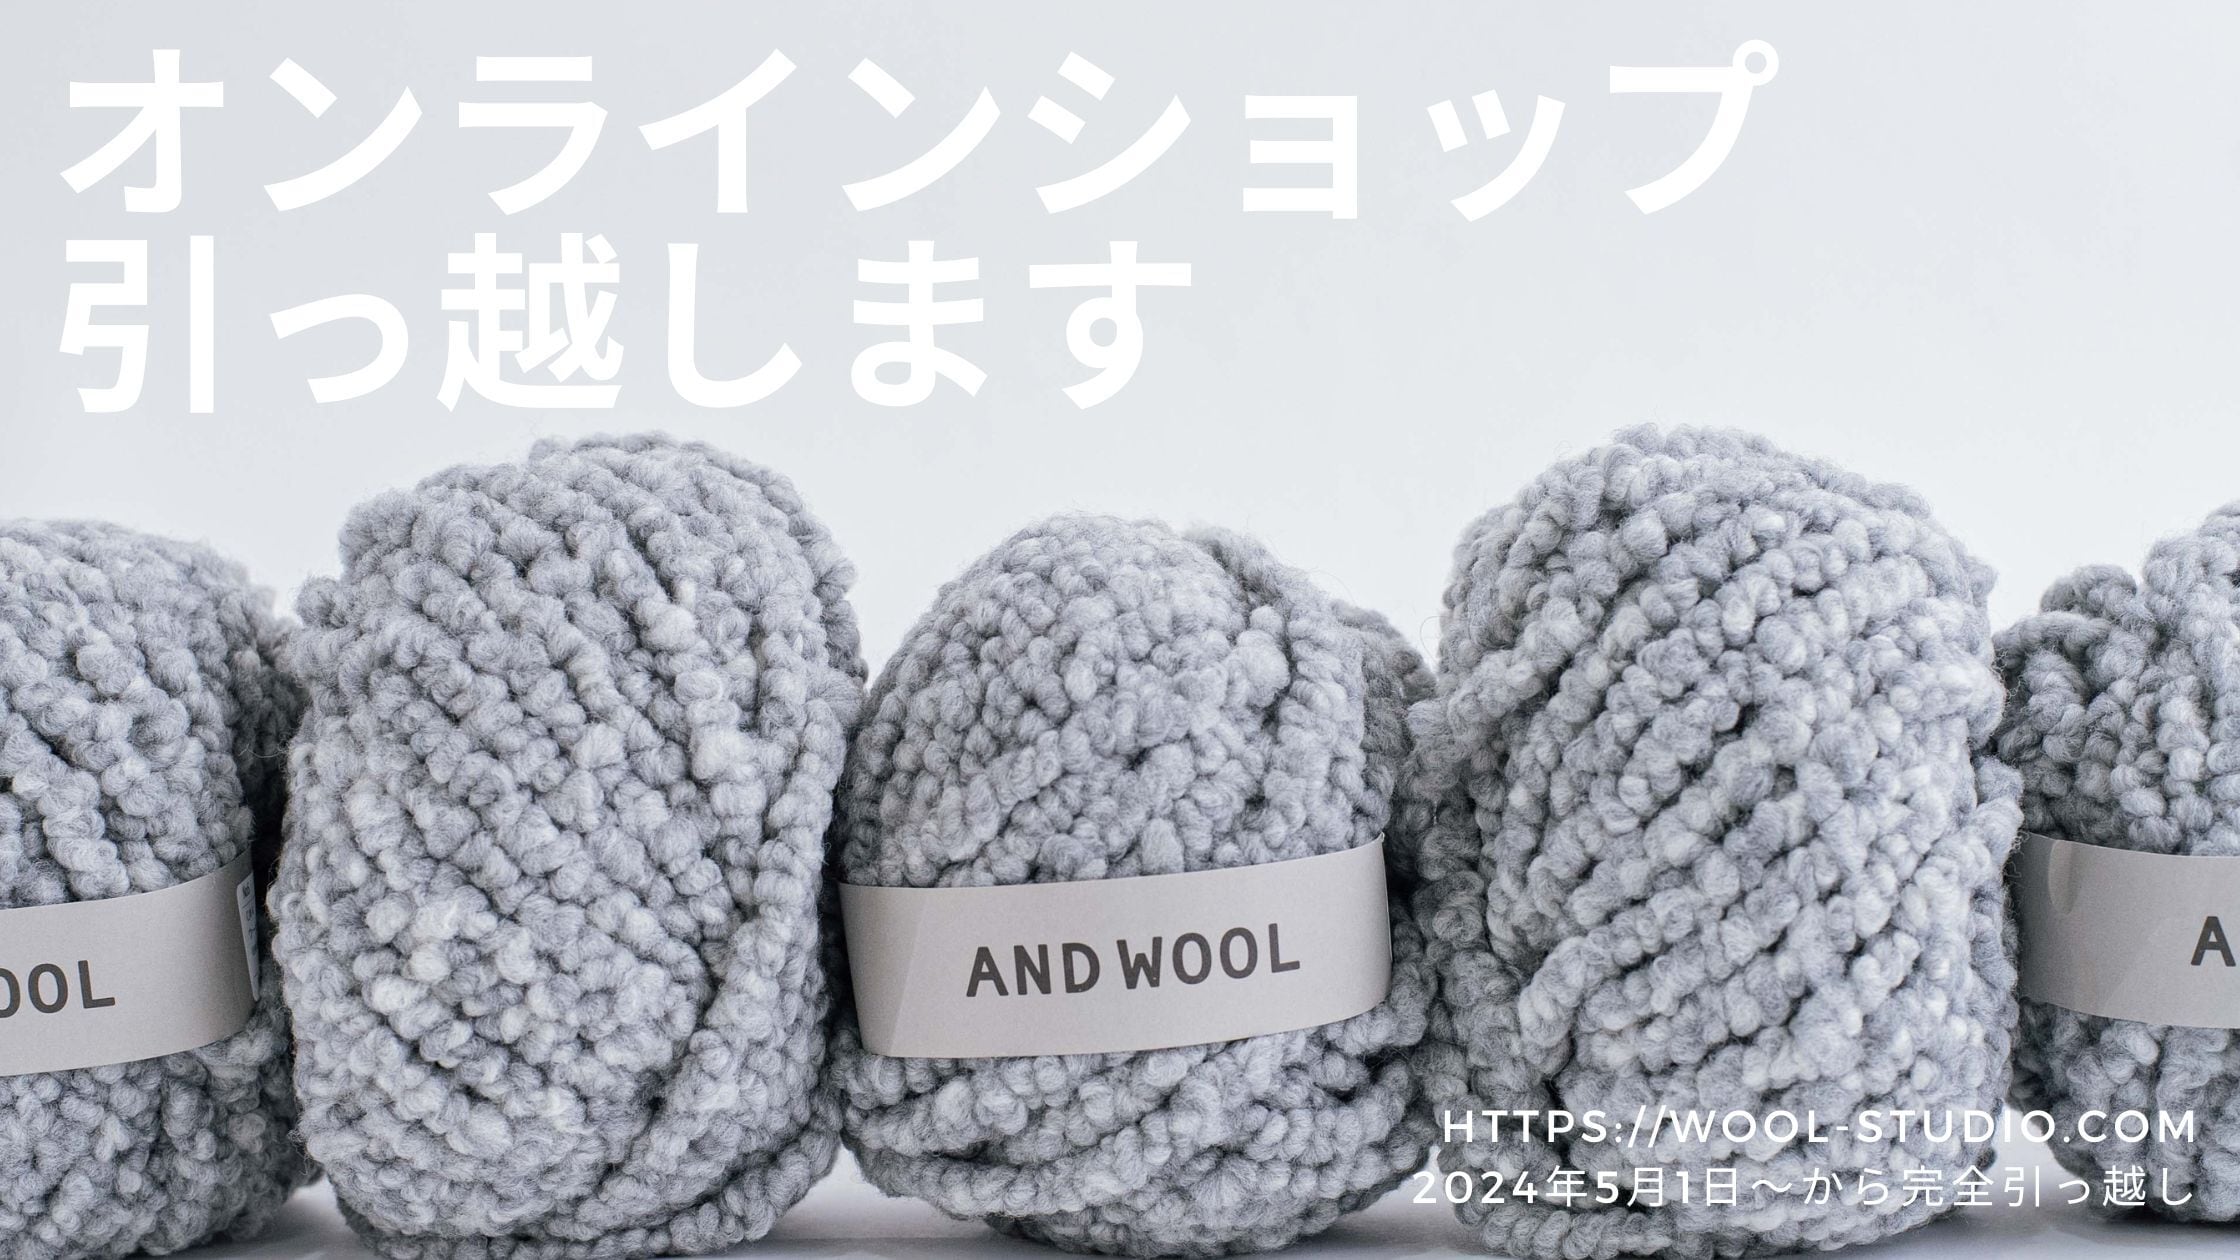 https://wool-studio.com/